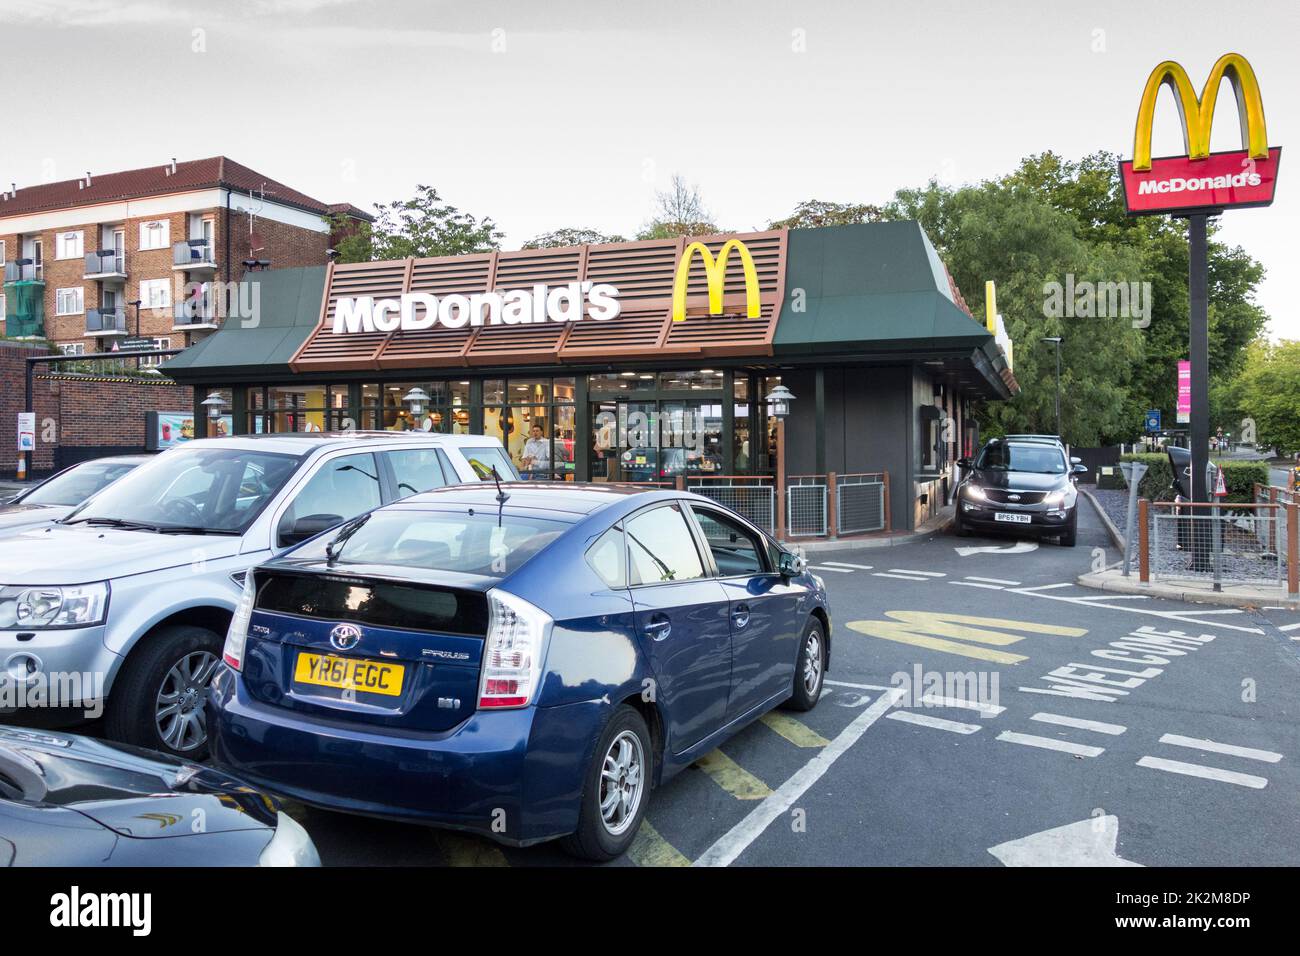 McDonald's traverse un restaurant de restauration rapide à Brentford, Londres, Angleterre, Royaume-Uni Banque D'Images